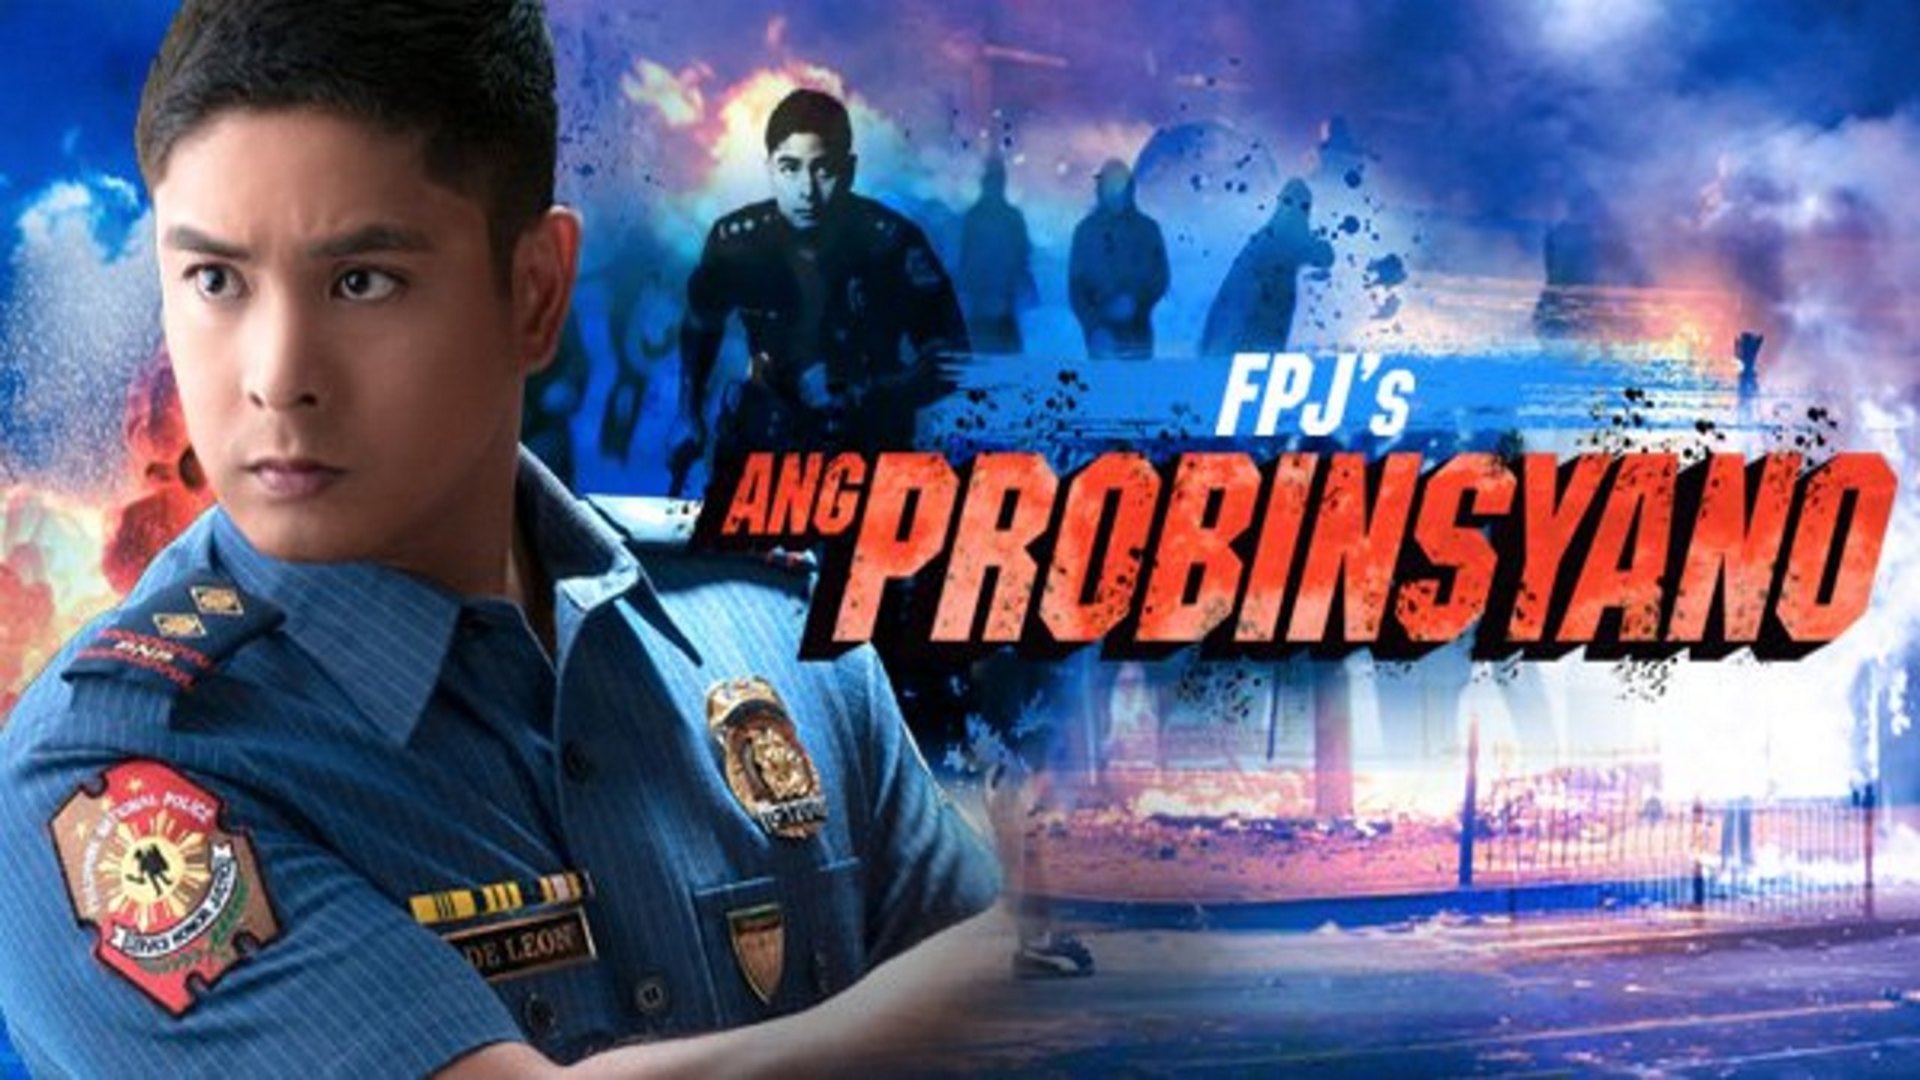 FPJ S Ang Probinsyano TV Series 2015 Now